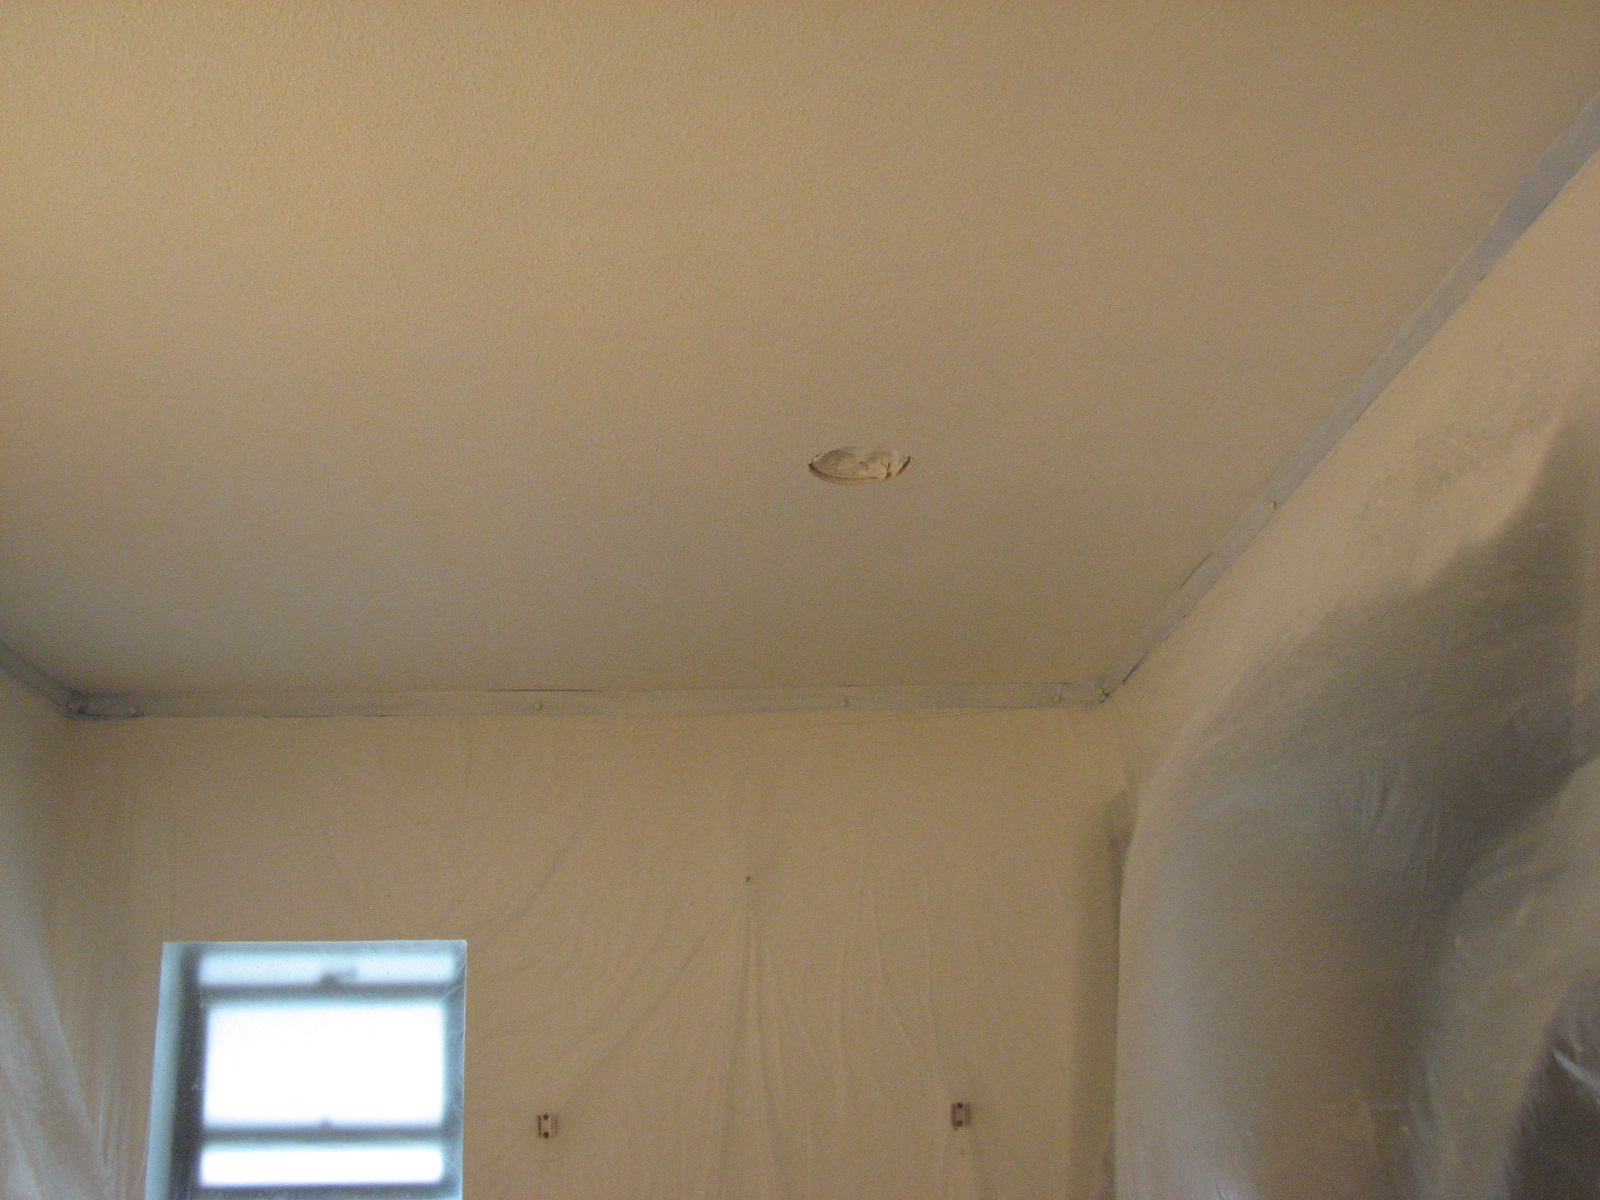 Ceiling Repair Melbourne Fl Drywall Repair Water Damage Textures